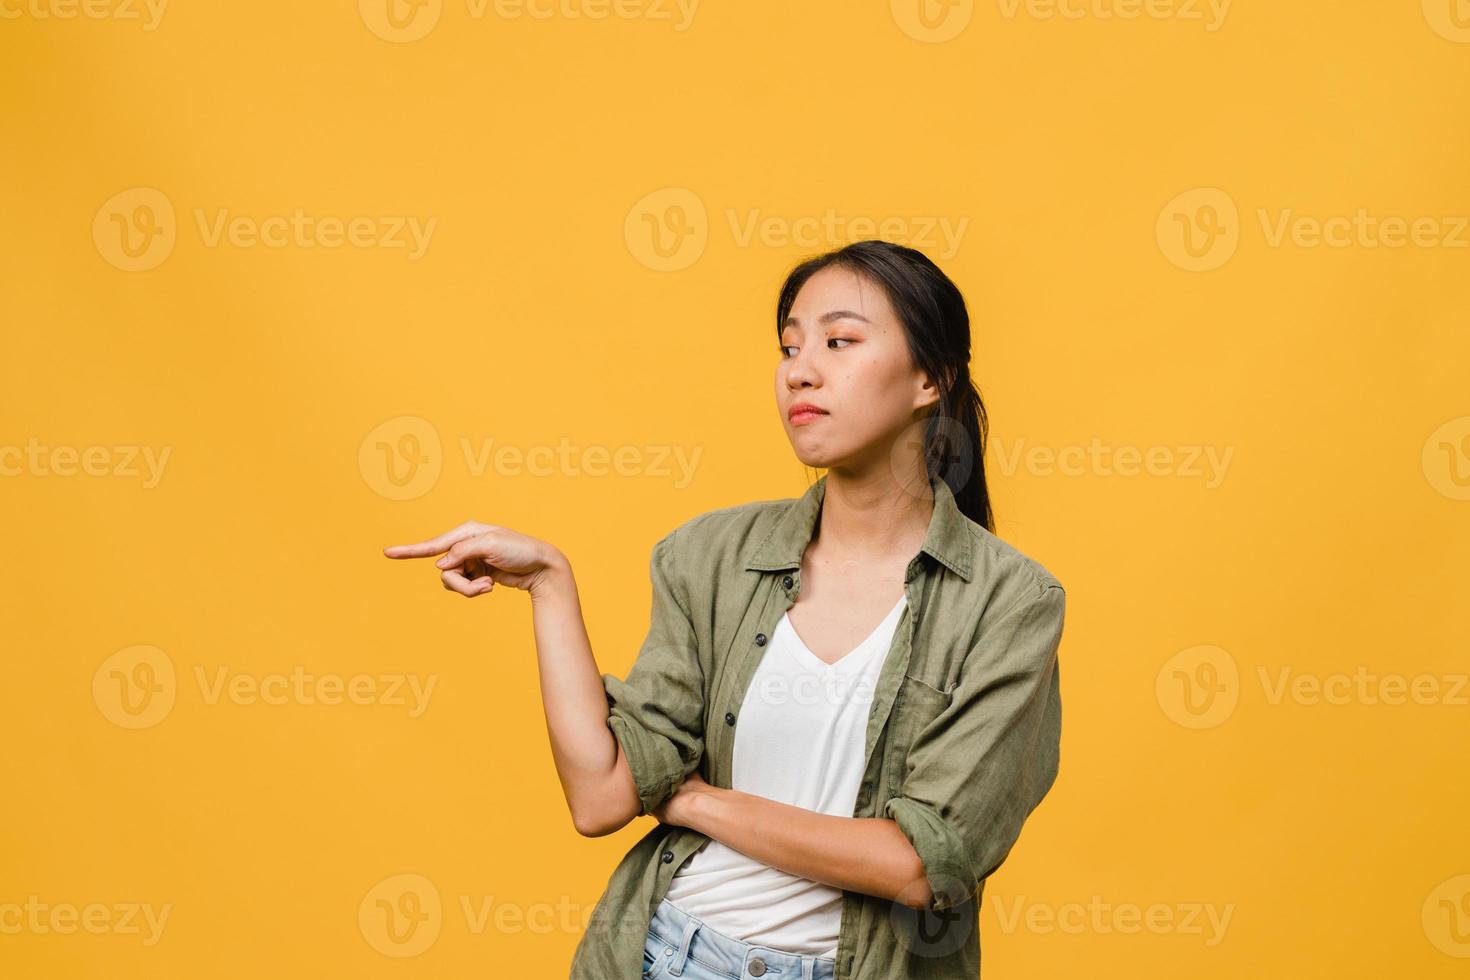 jovem asiática mostra algo incrível no espaço em branco com expressão negativa, animado gritando, chorando com raiva emocional em roupas casuais isoladas sobre fundo amarelo. conceito de expressão facial. foto